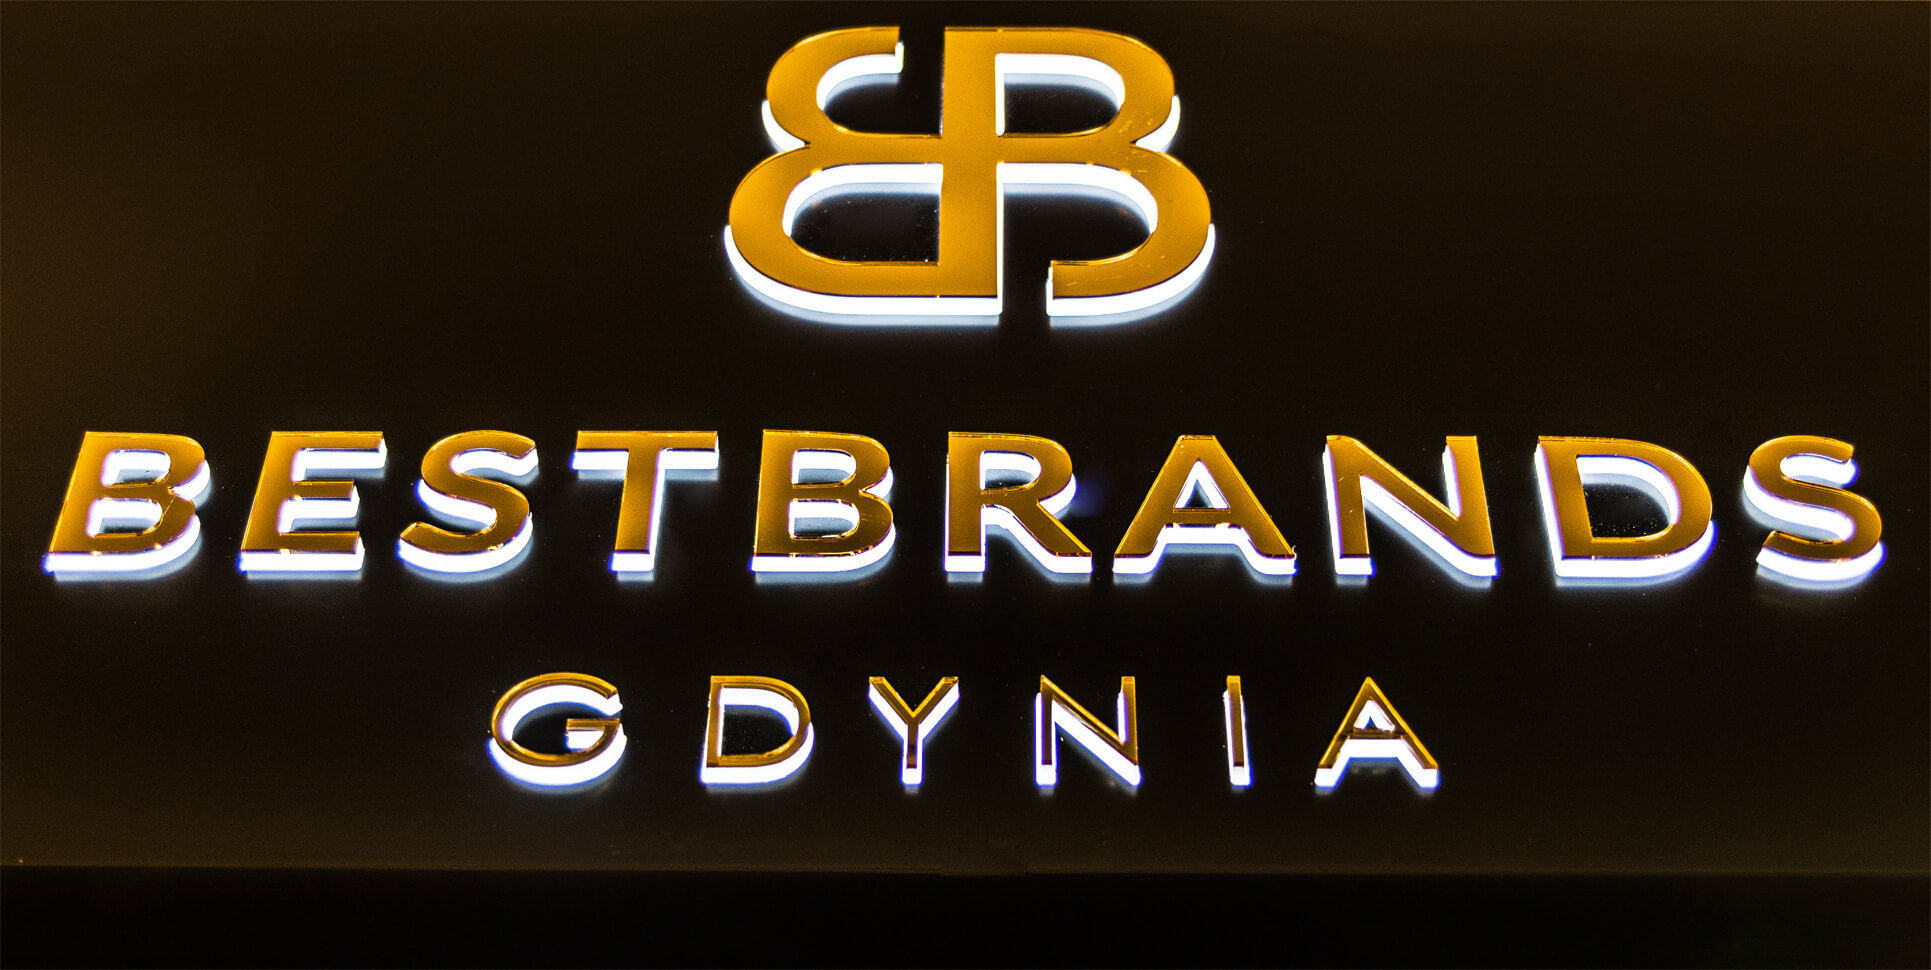 Bestbrands Gdynia - Bestbrands Gdynia - kaseton świetlny reklamowy umieszczony nad wejściem